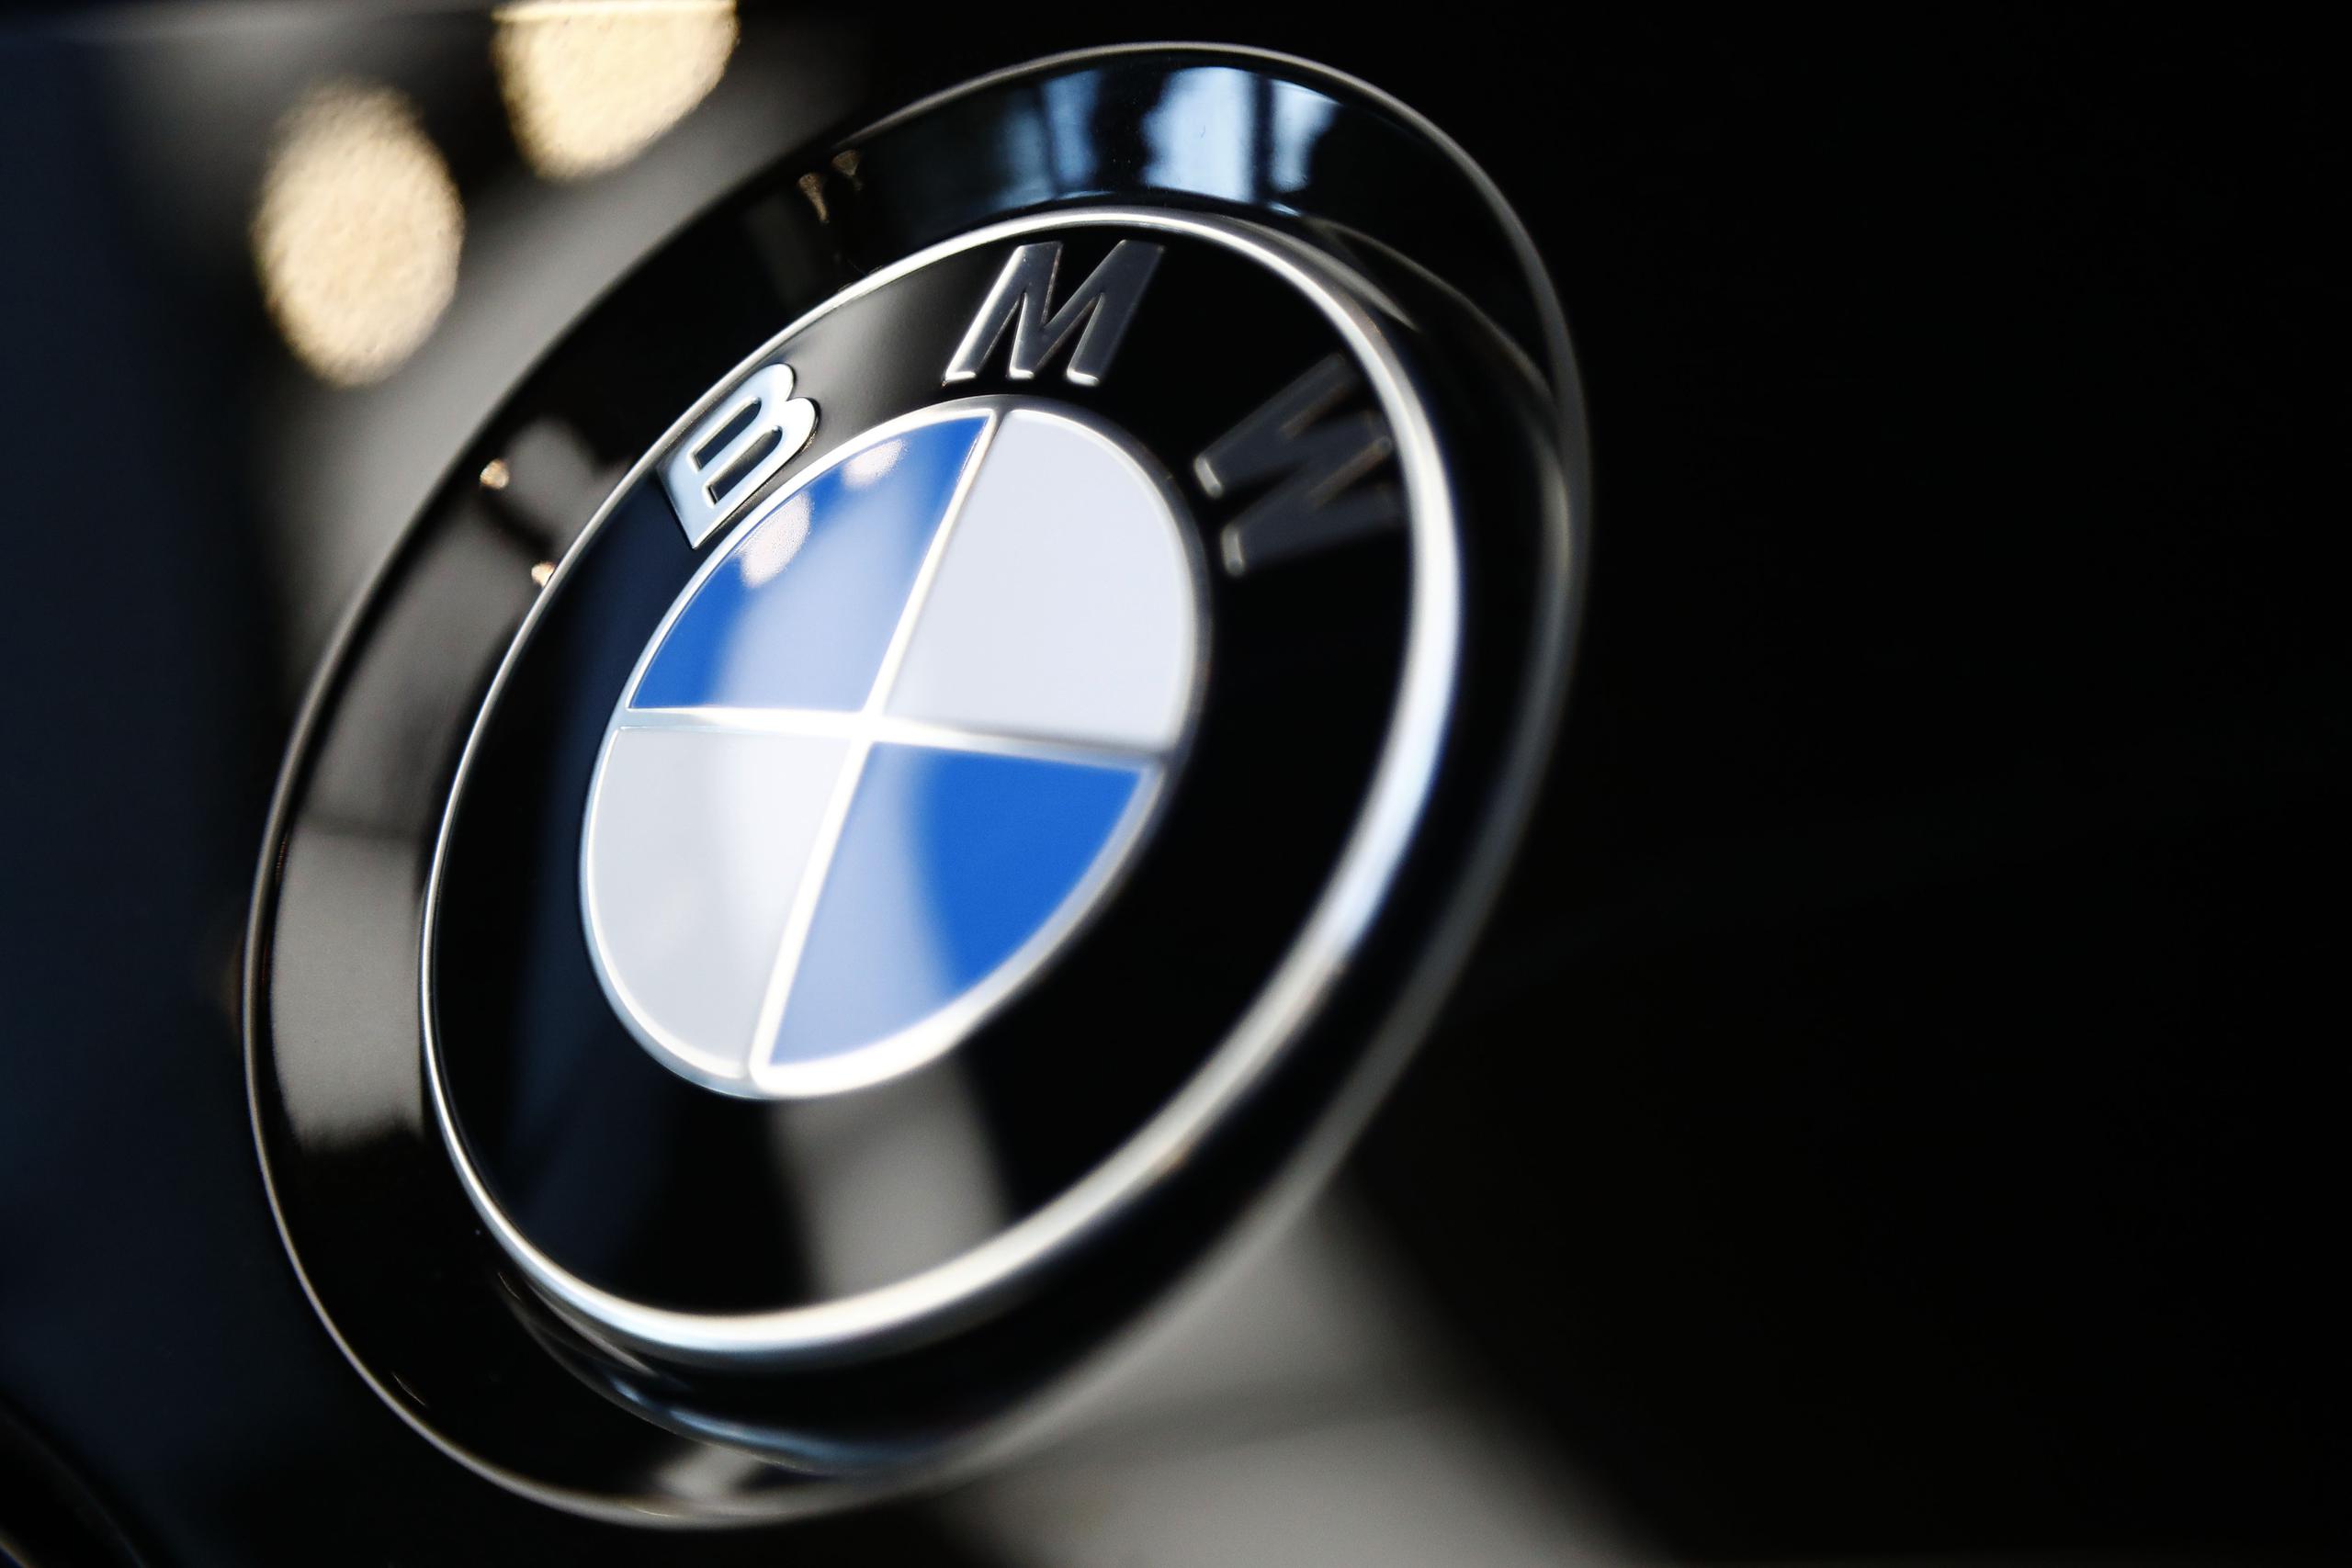 BMW añadió que el vehículo debía ir identificado como auto de pruebas por motivos de protección de datos, porque grababa imágenes.